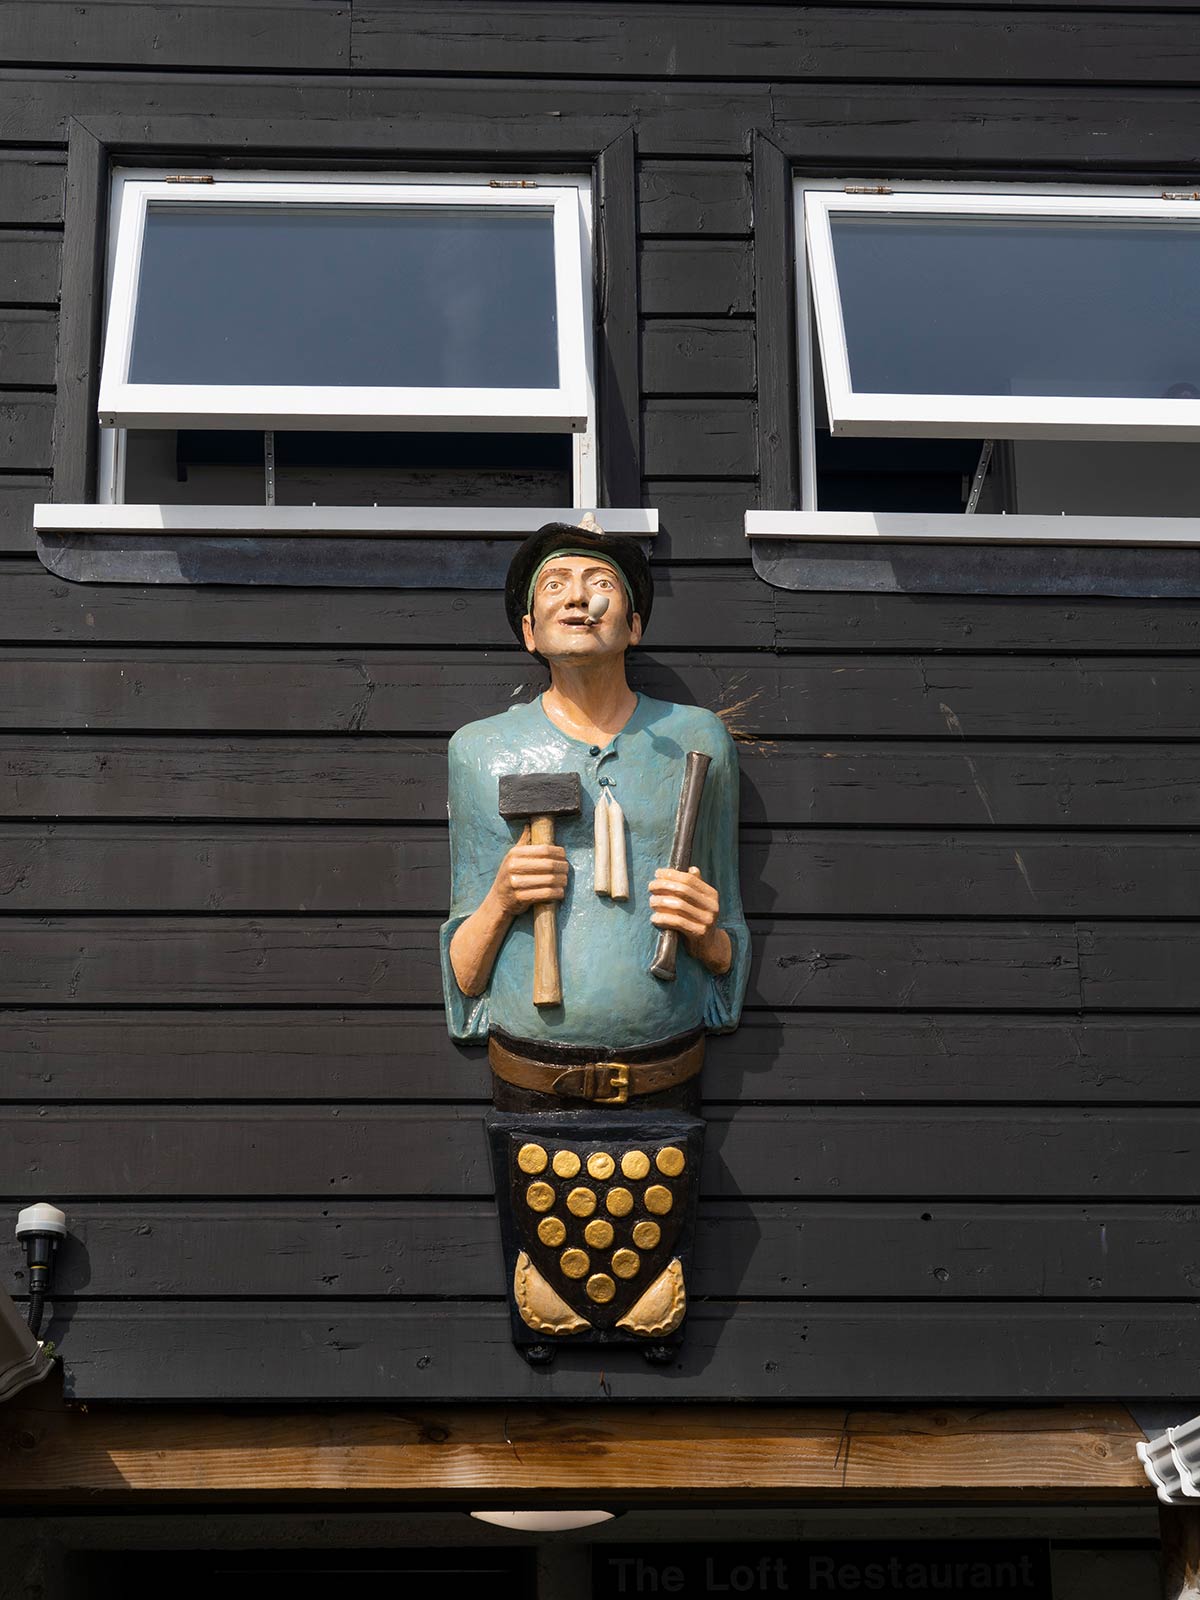 Décoration artistique de rue, Saint Ives, Cornouailles, Angleterre / Street art, St Ives, Cornwall, England, UK